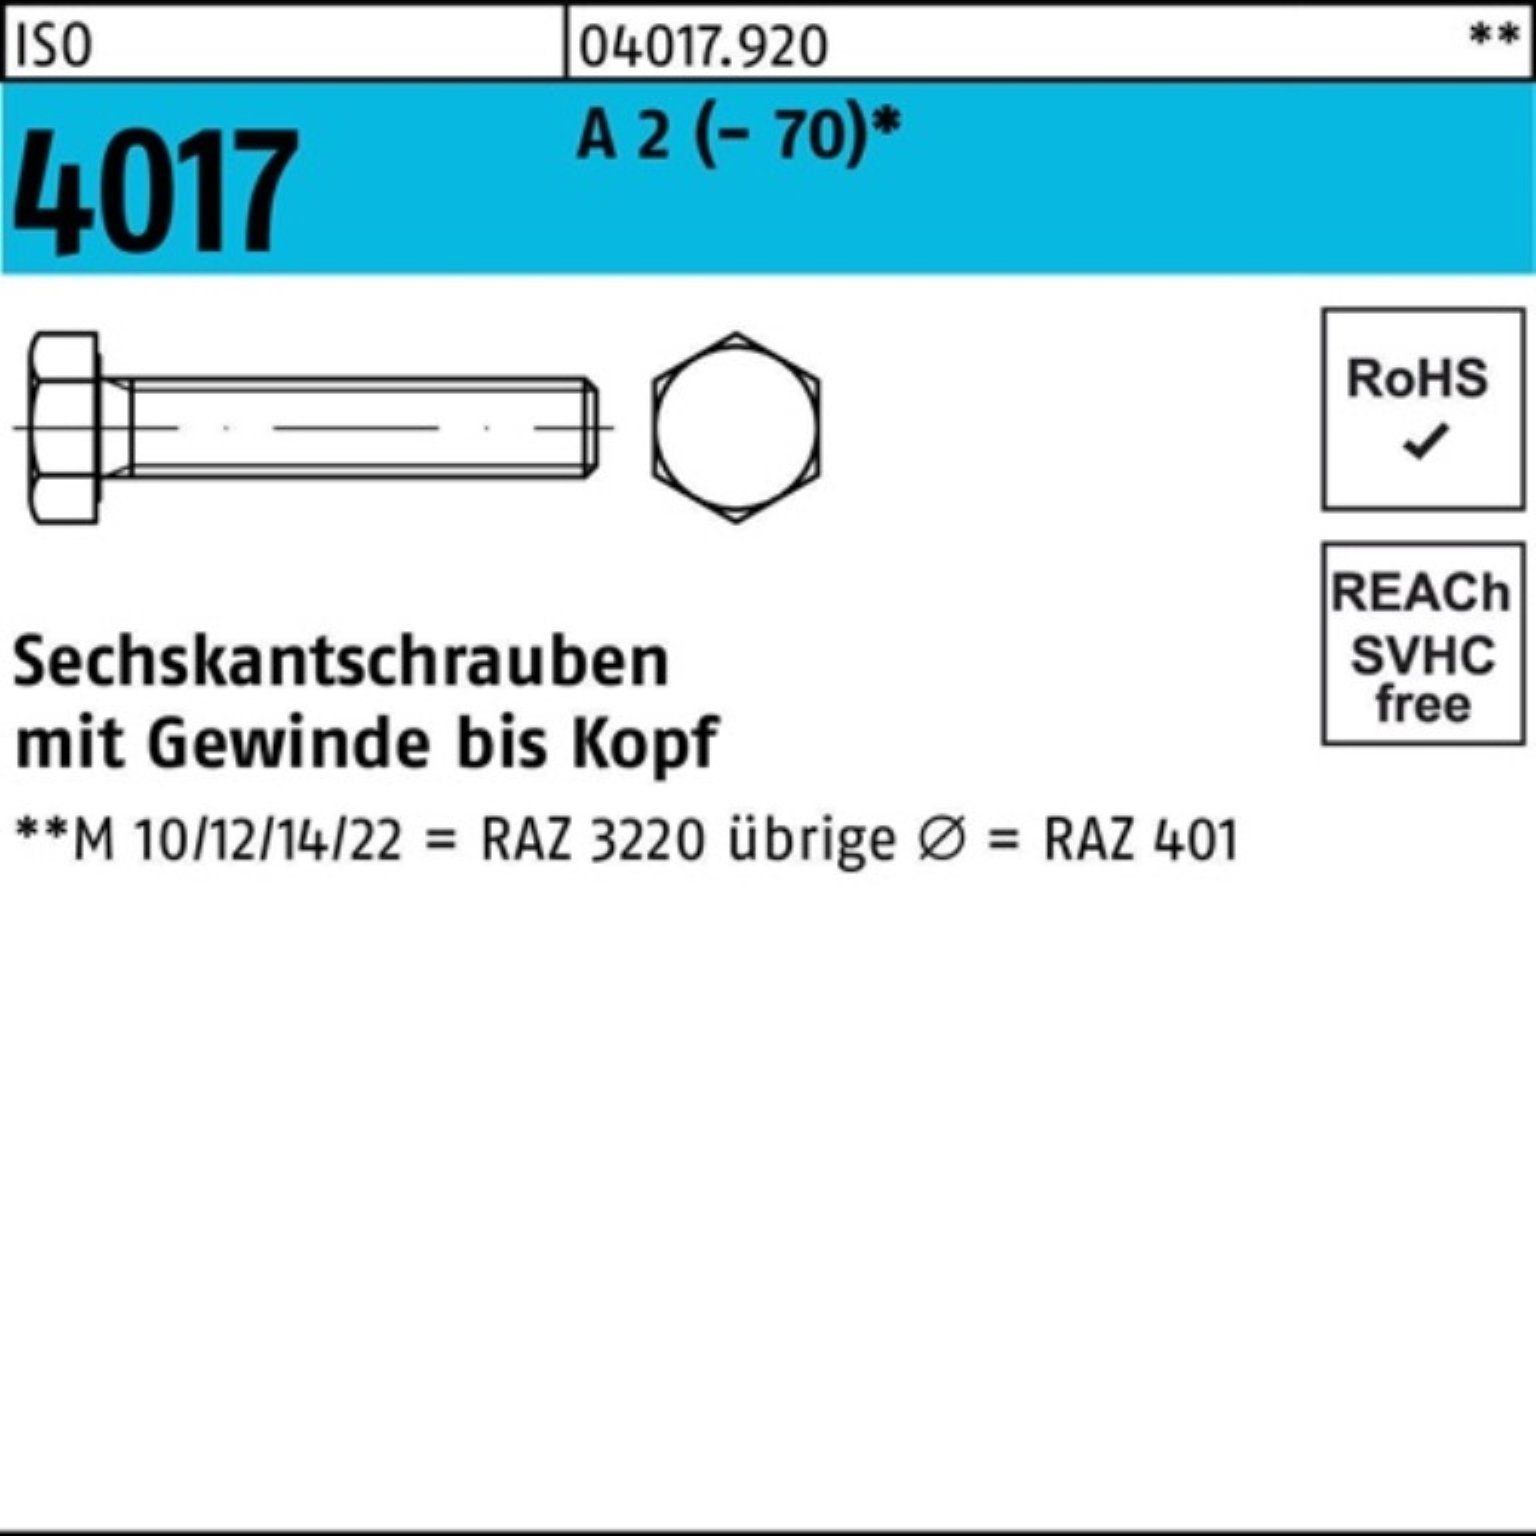 Bufab Sechskantschraube 100er Pack Sechskantschraube ISO 4017 VG M27x 50 A 2 (70) 1 Stück I | Schrauben